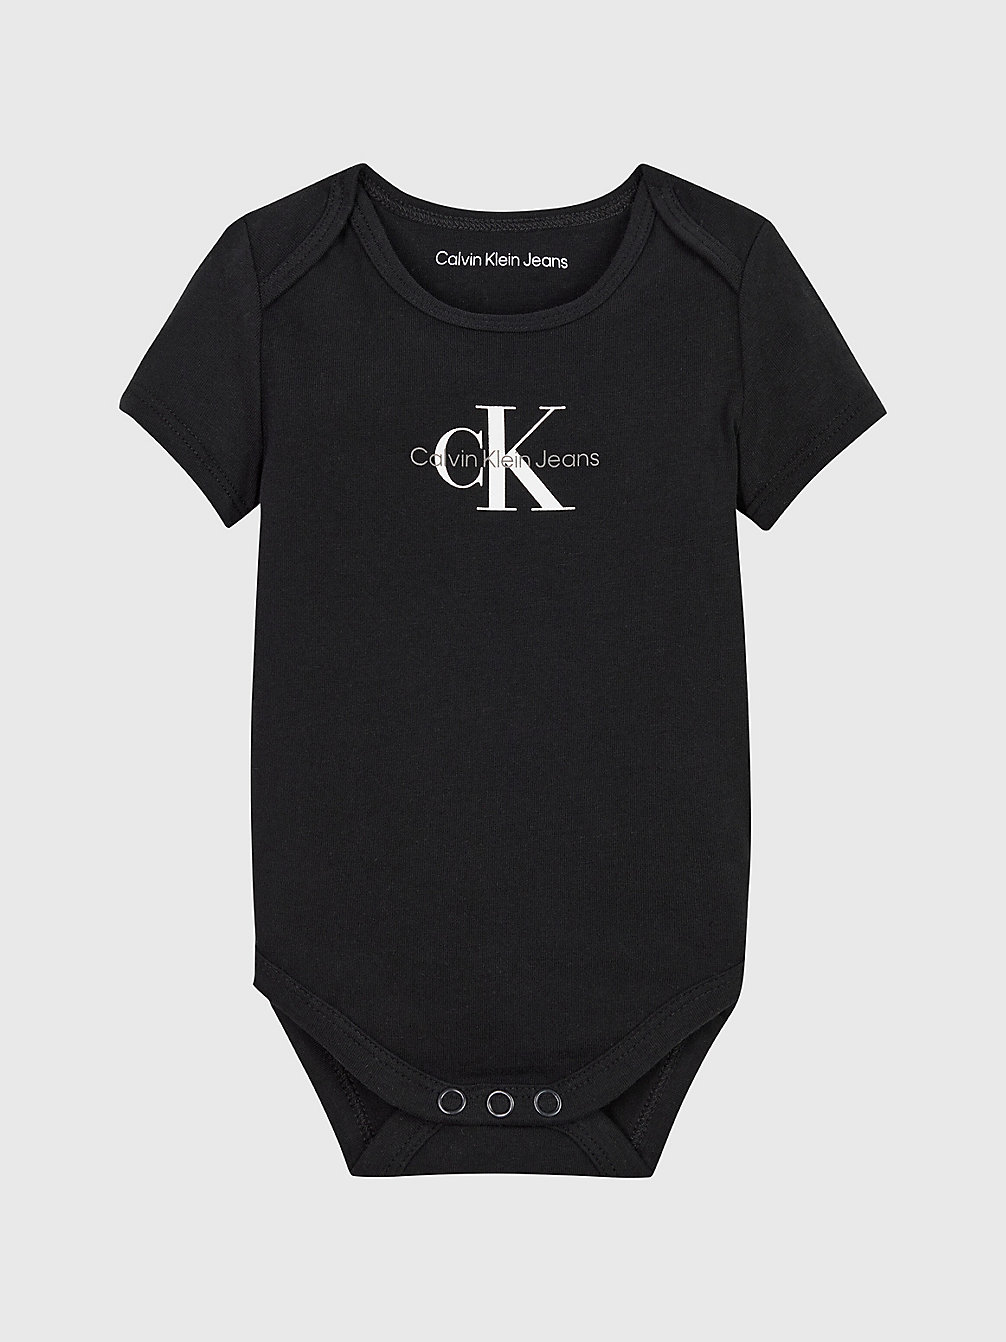 CK BLACK Body Pour Nouveau-Né Avec Logo undefined newborn Calvin Klein